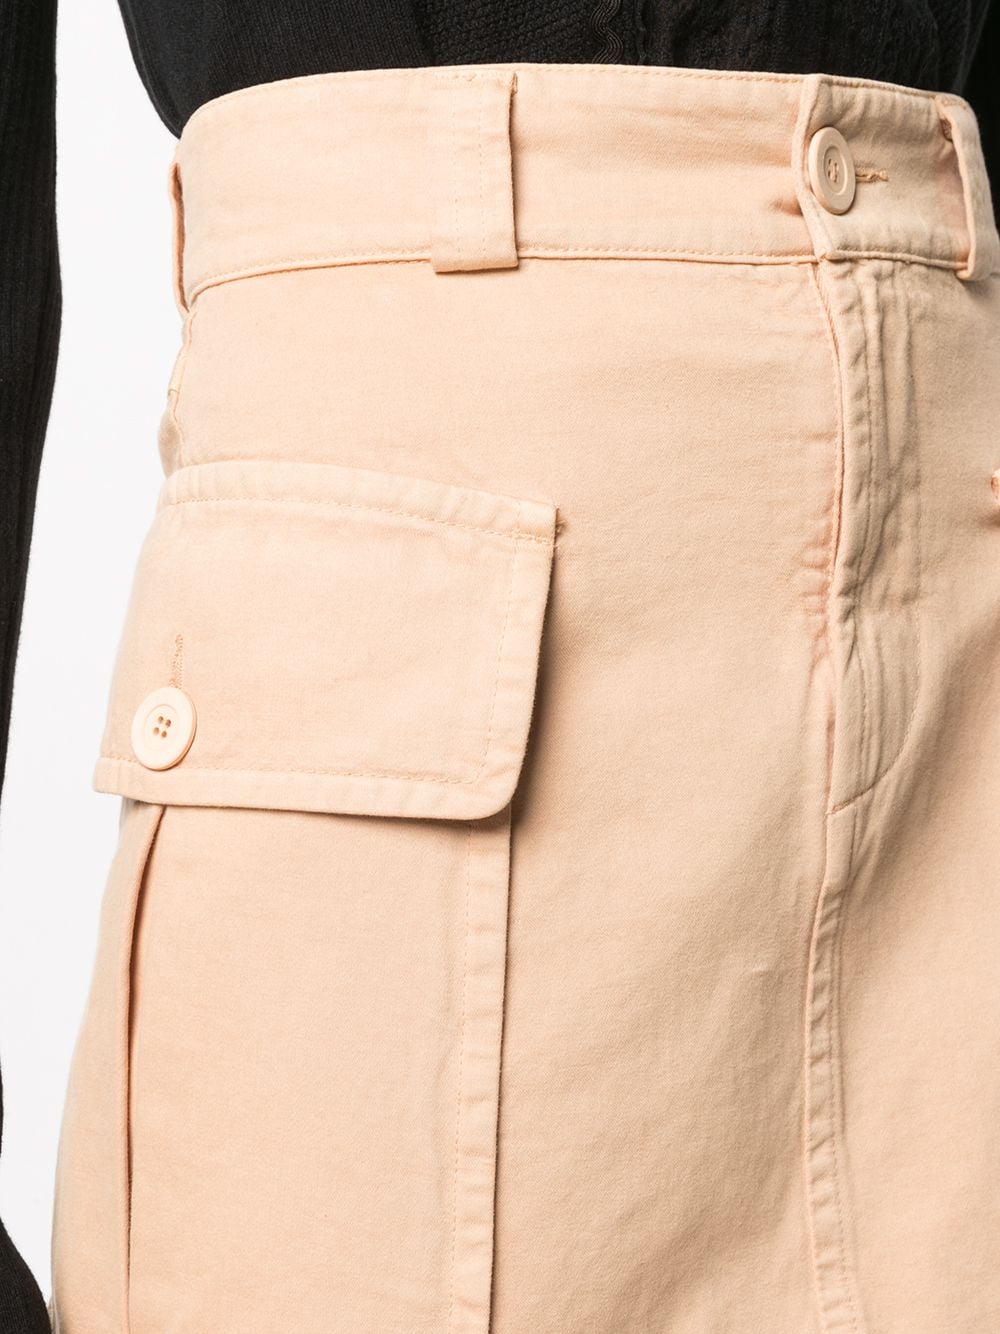 фото See by chloé джинсовая юбка мини с завышенной талией